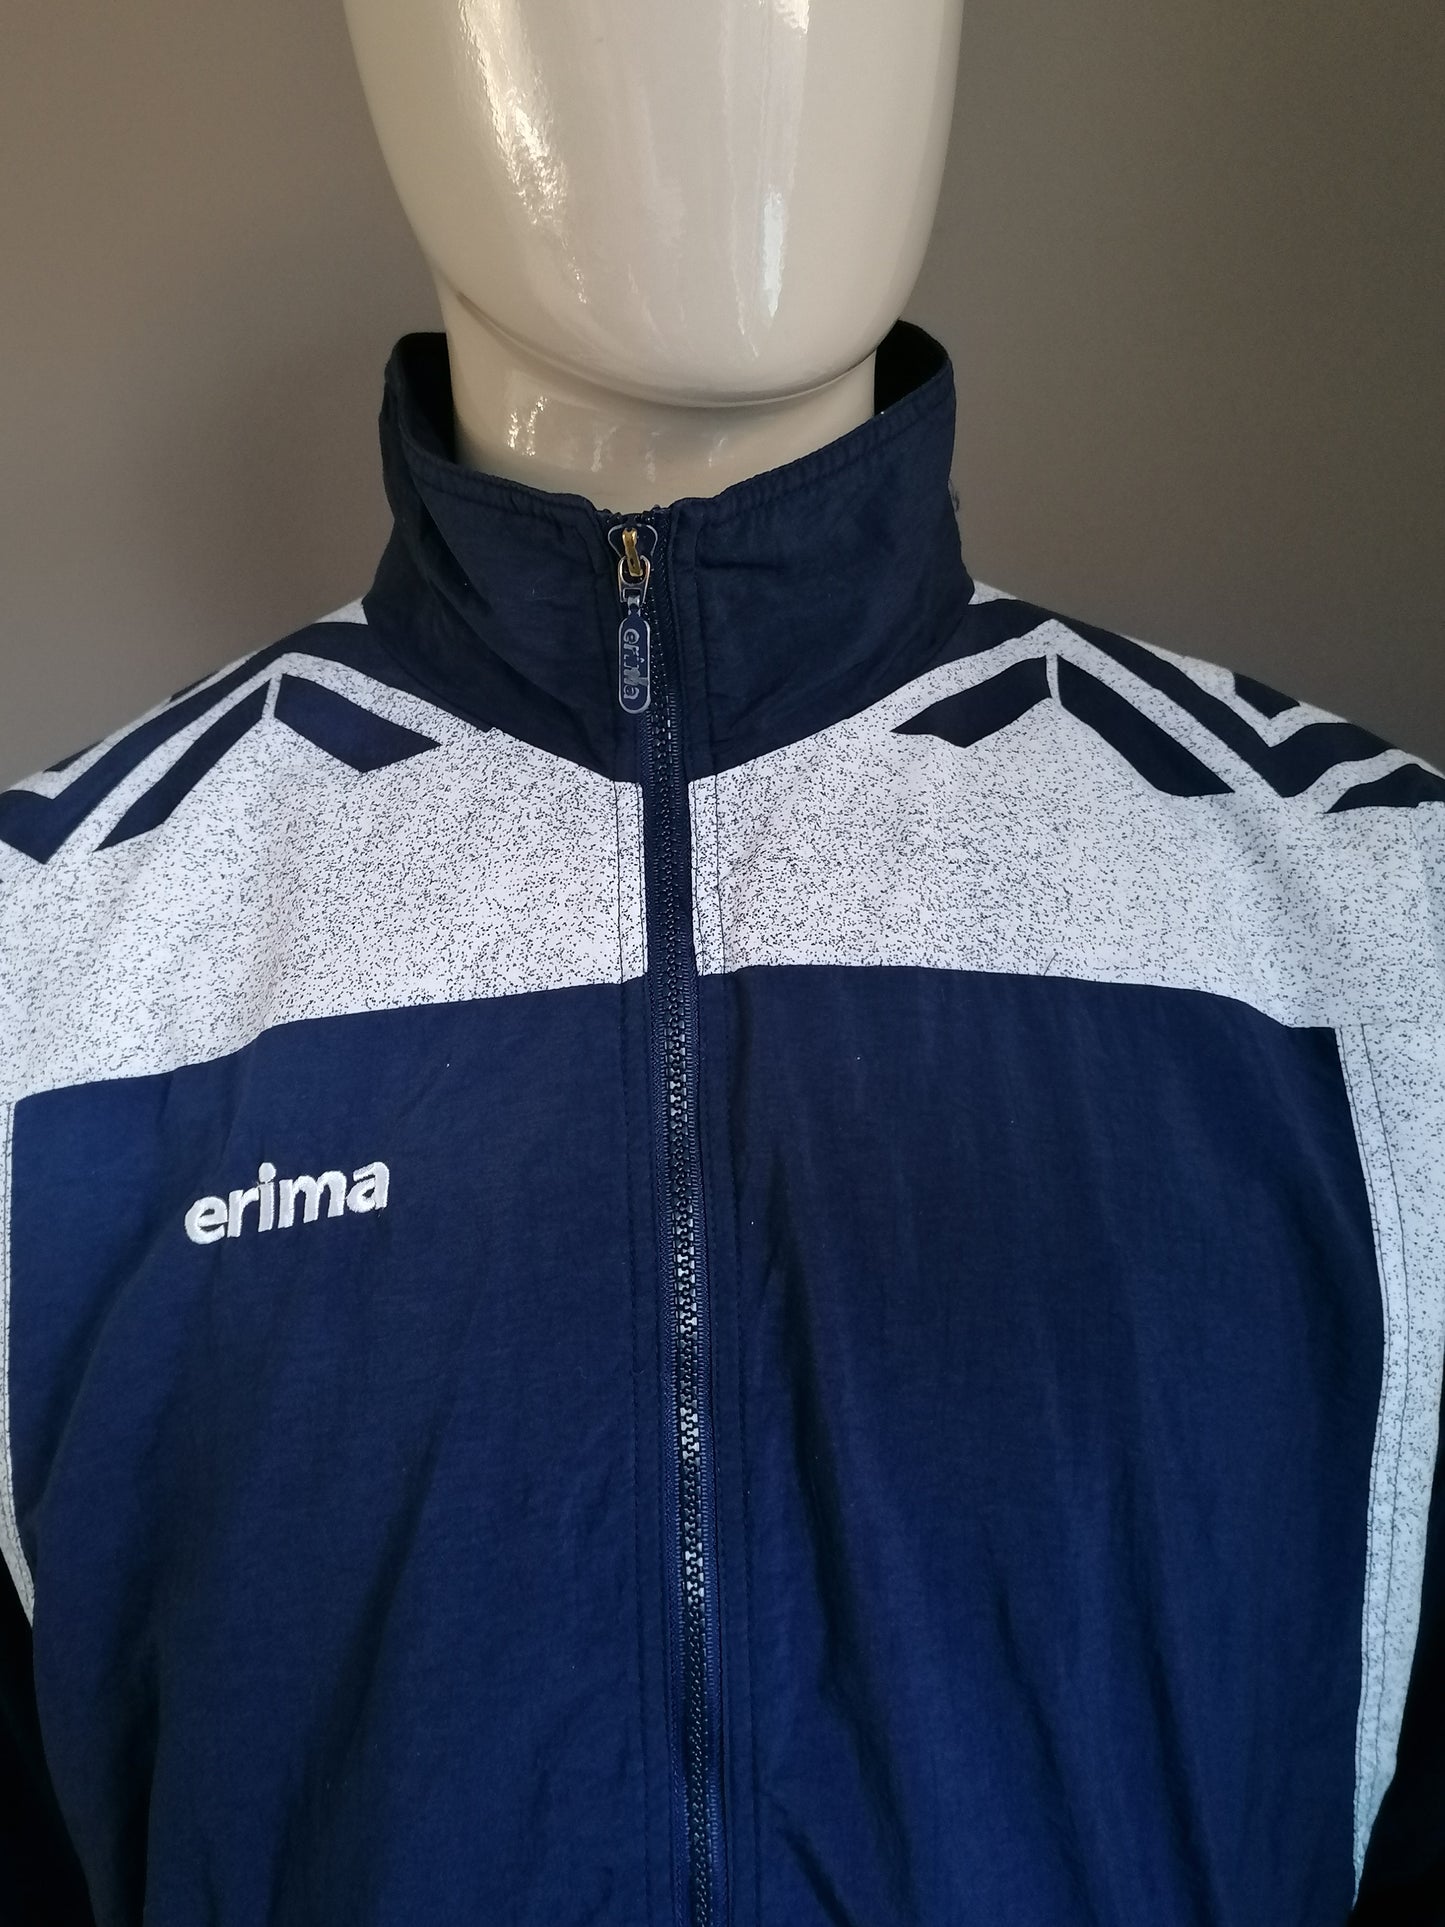 Veste d'entraînement de l'Erima 80S-90 vintage. Couleur jaune blanc bleu. Taille xl.